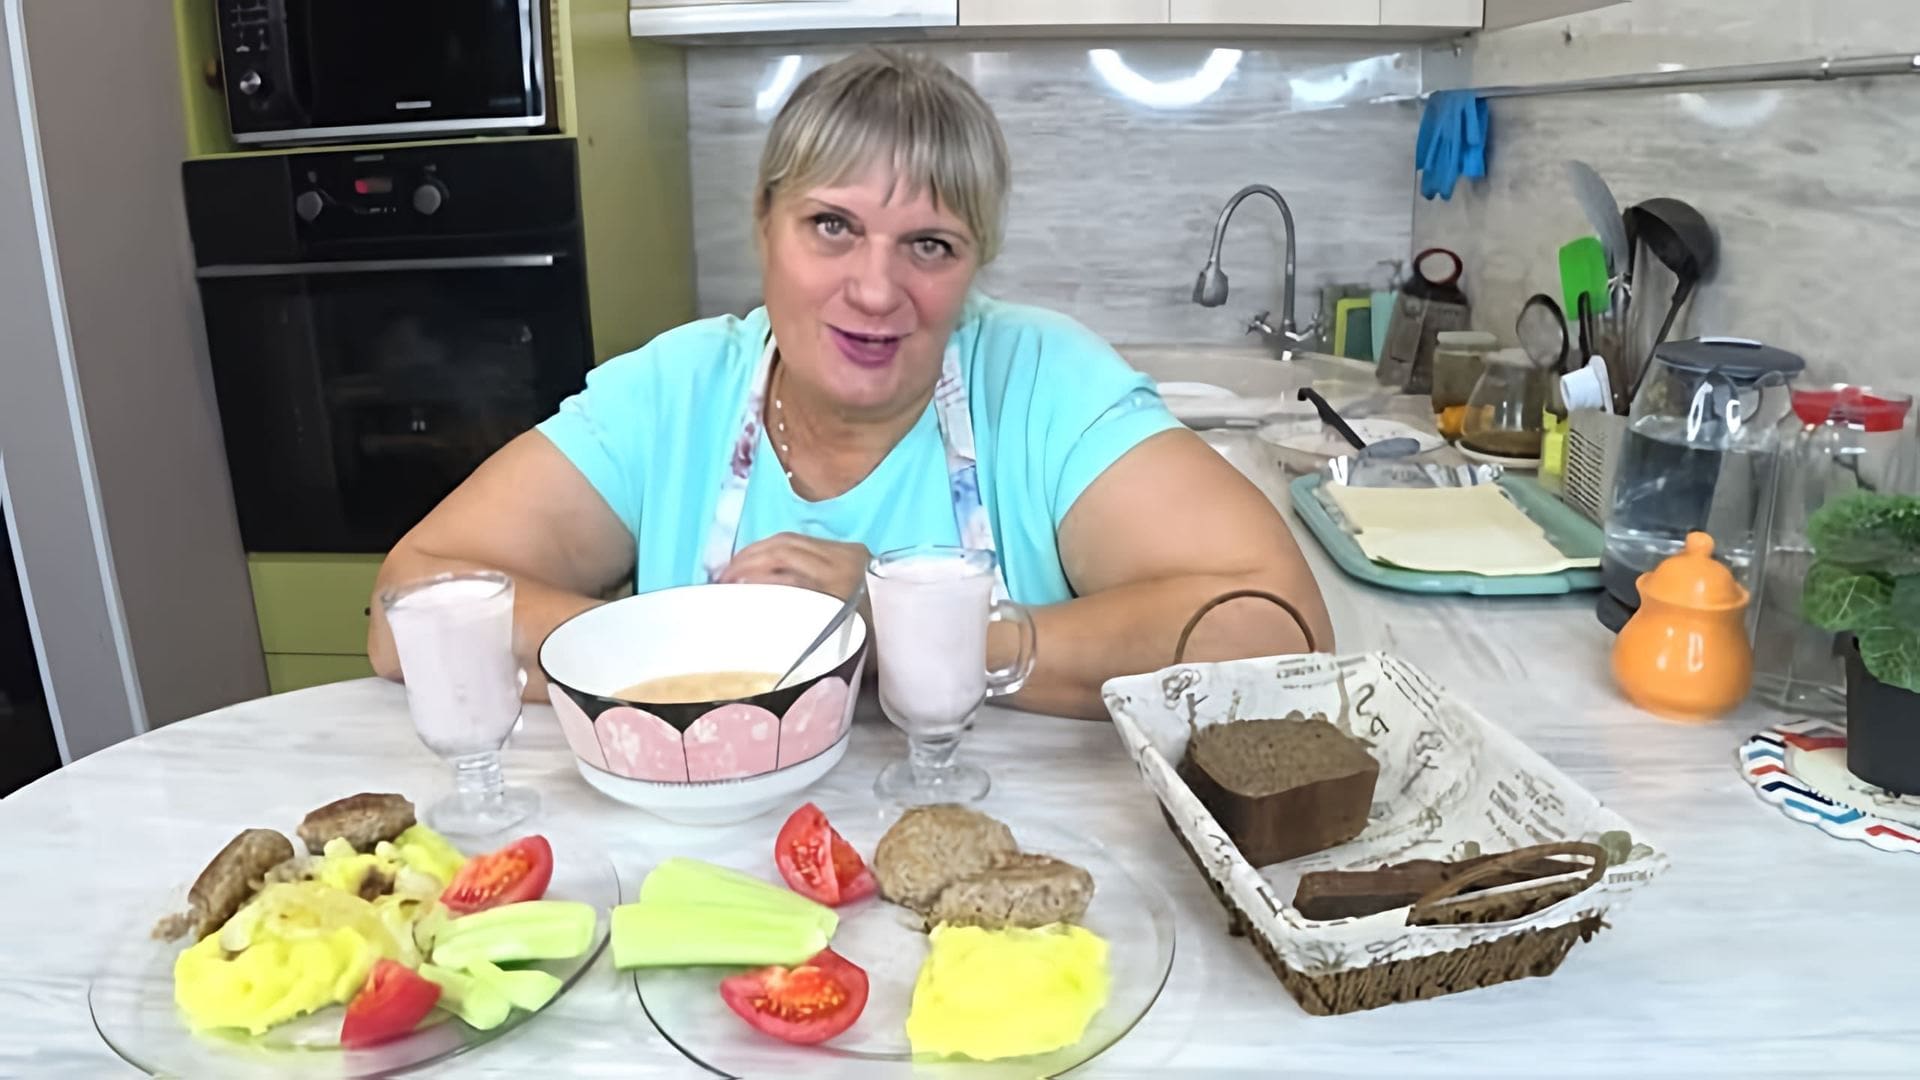 В этом видео автор показывает свой обычный день, включая приготовление обеда